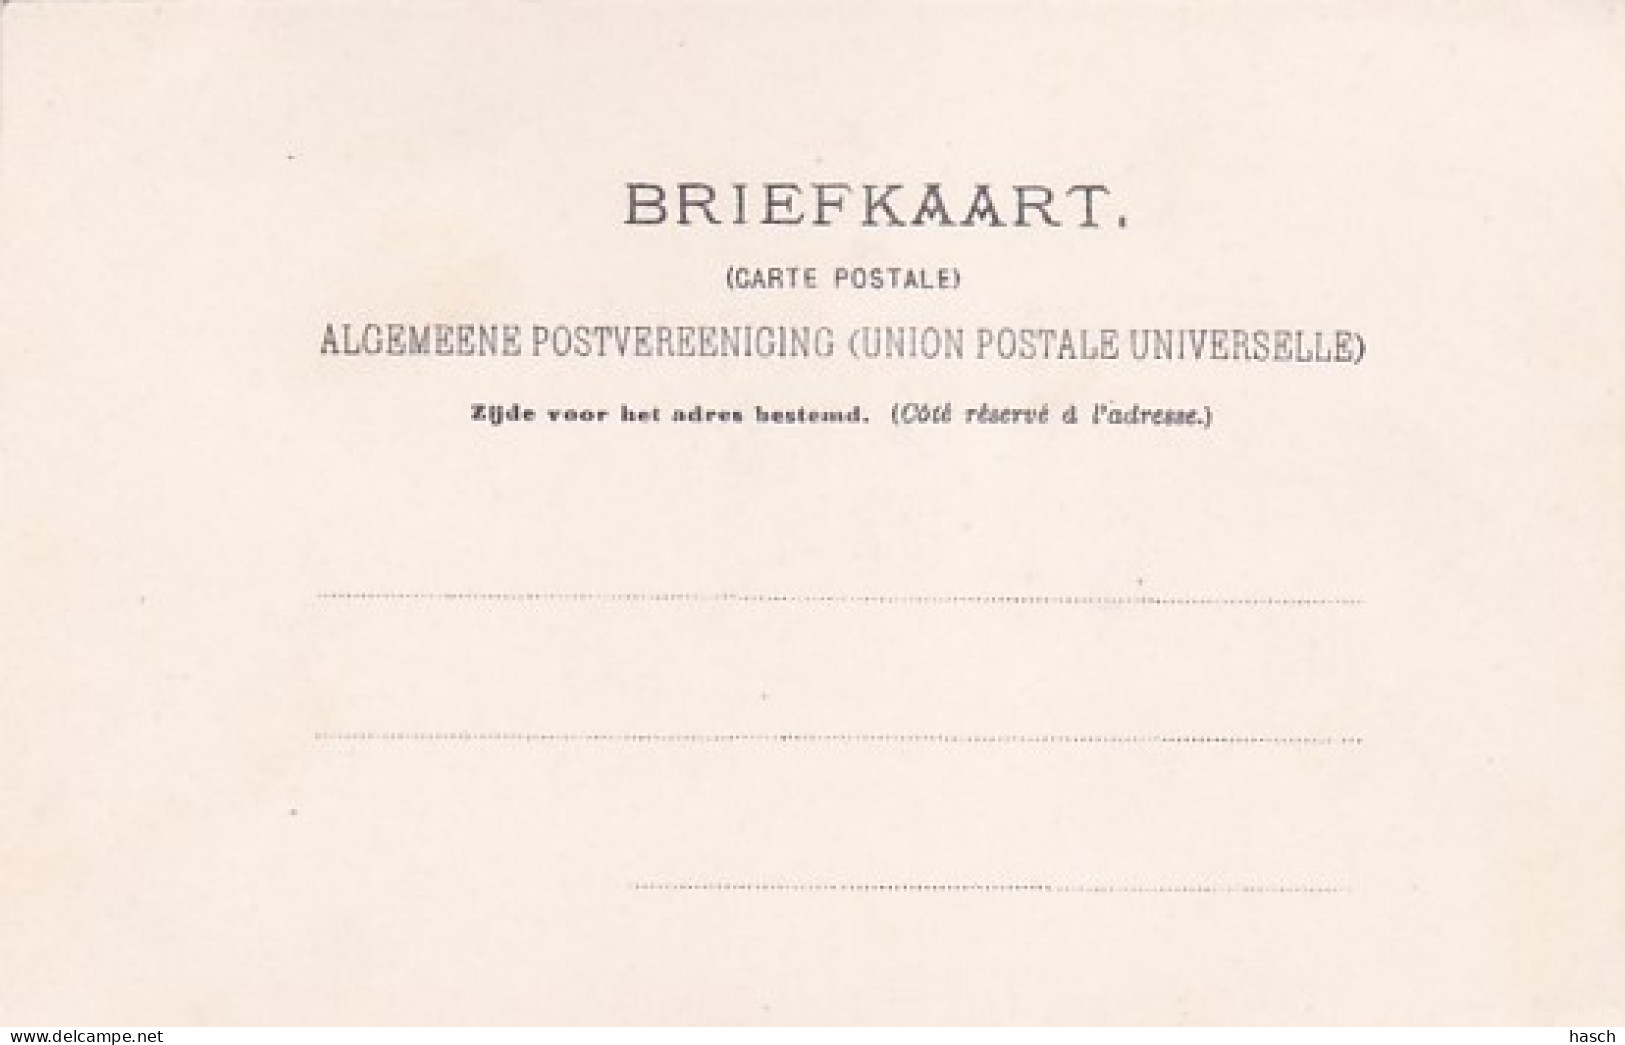 4821143Alkmaar, Waag Rond 1900. (minuscule Vouwen In De Hoeken) - Alkmaar